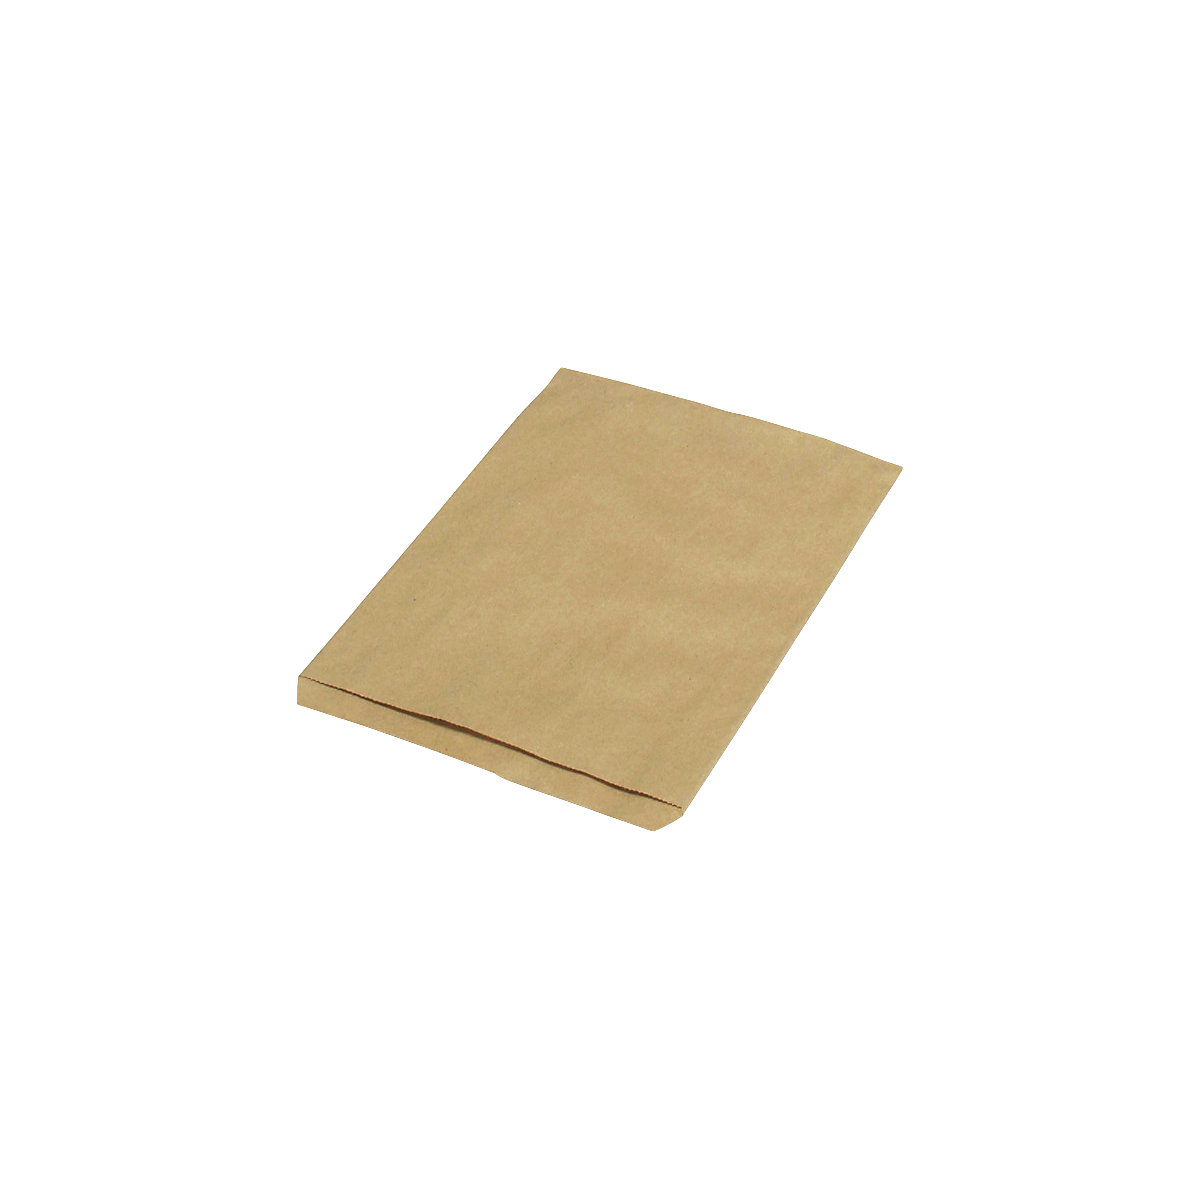 Sacchetti piatti – terra, in carta riciclata, lungh. x largh. 240 x 165 mm, conf. da 1000 pz., a partire da 5 conf.-2